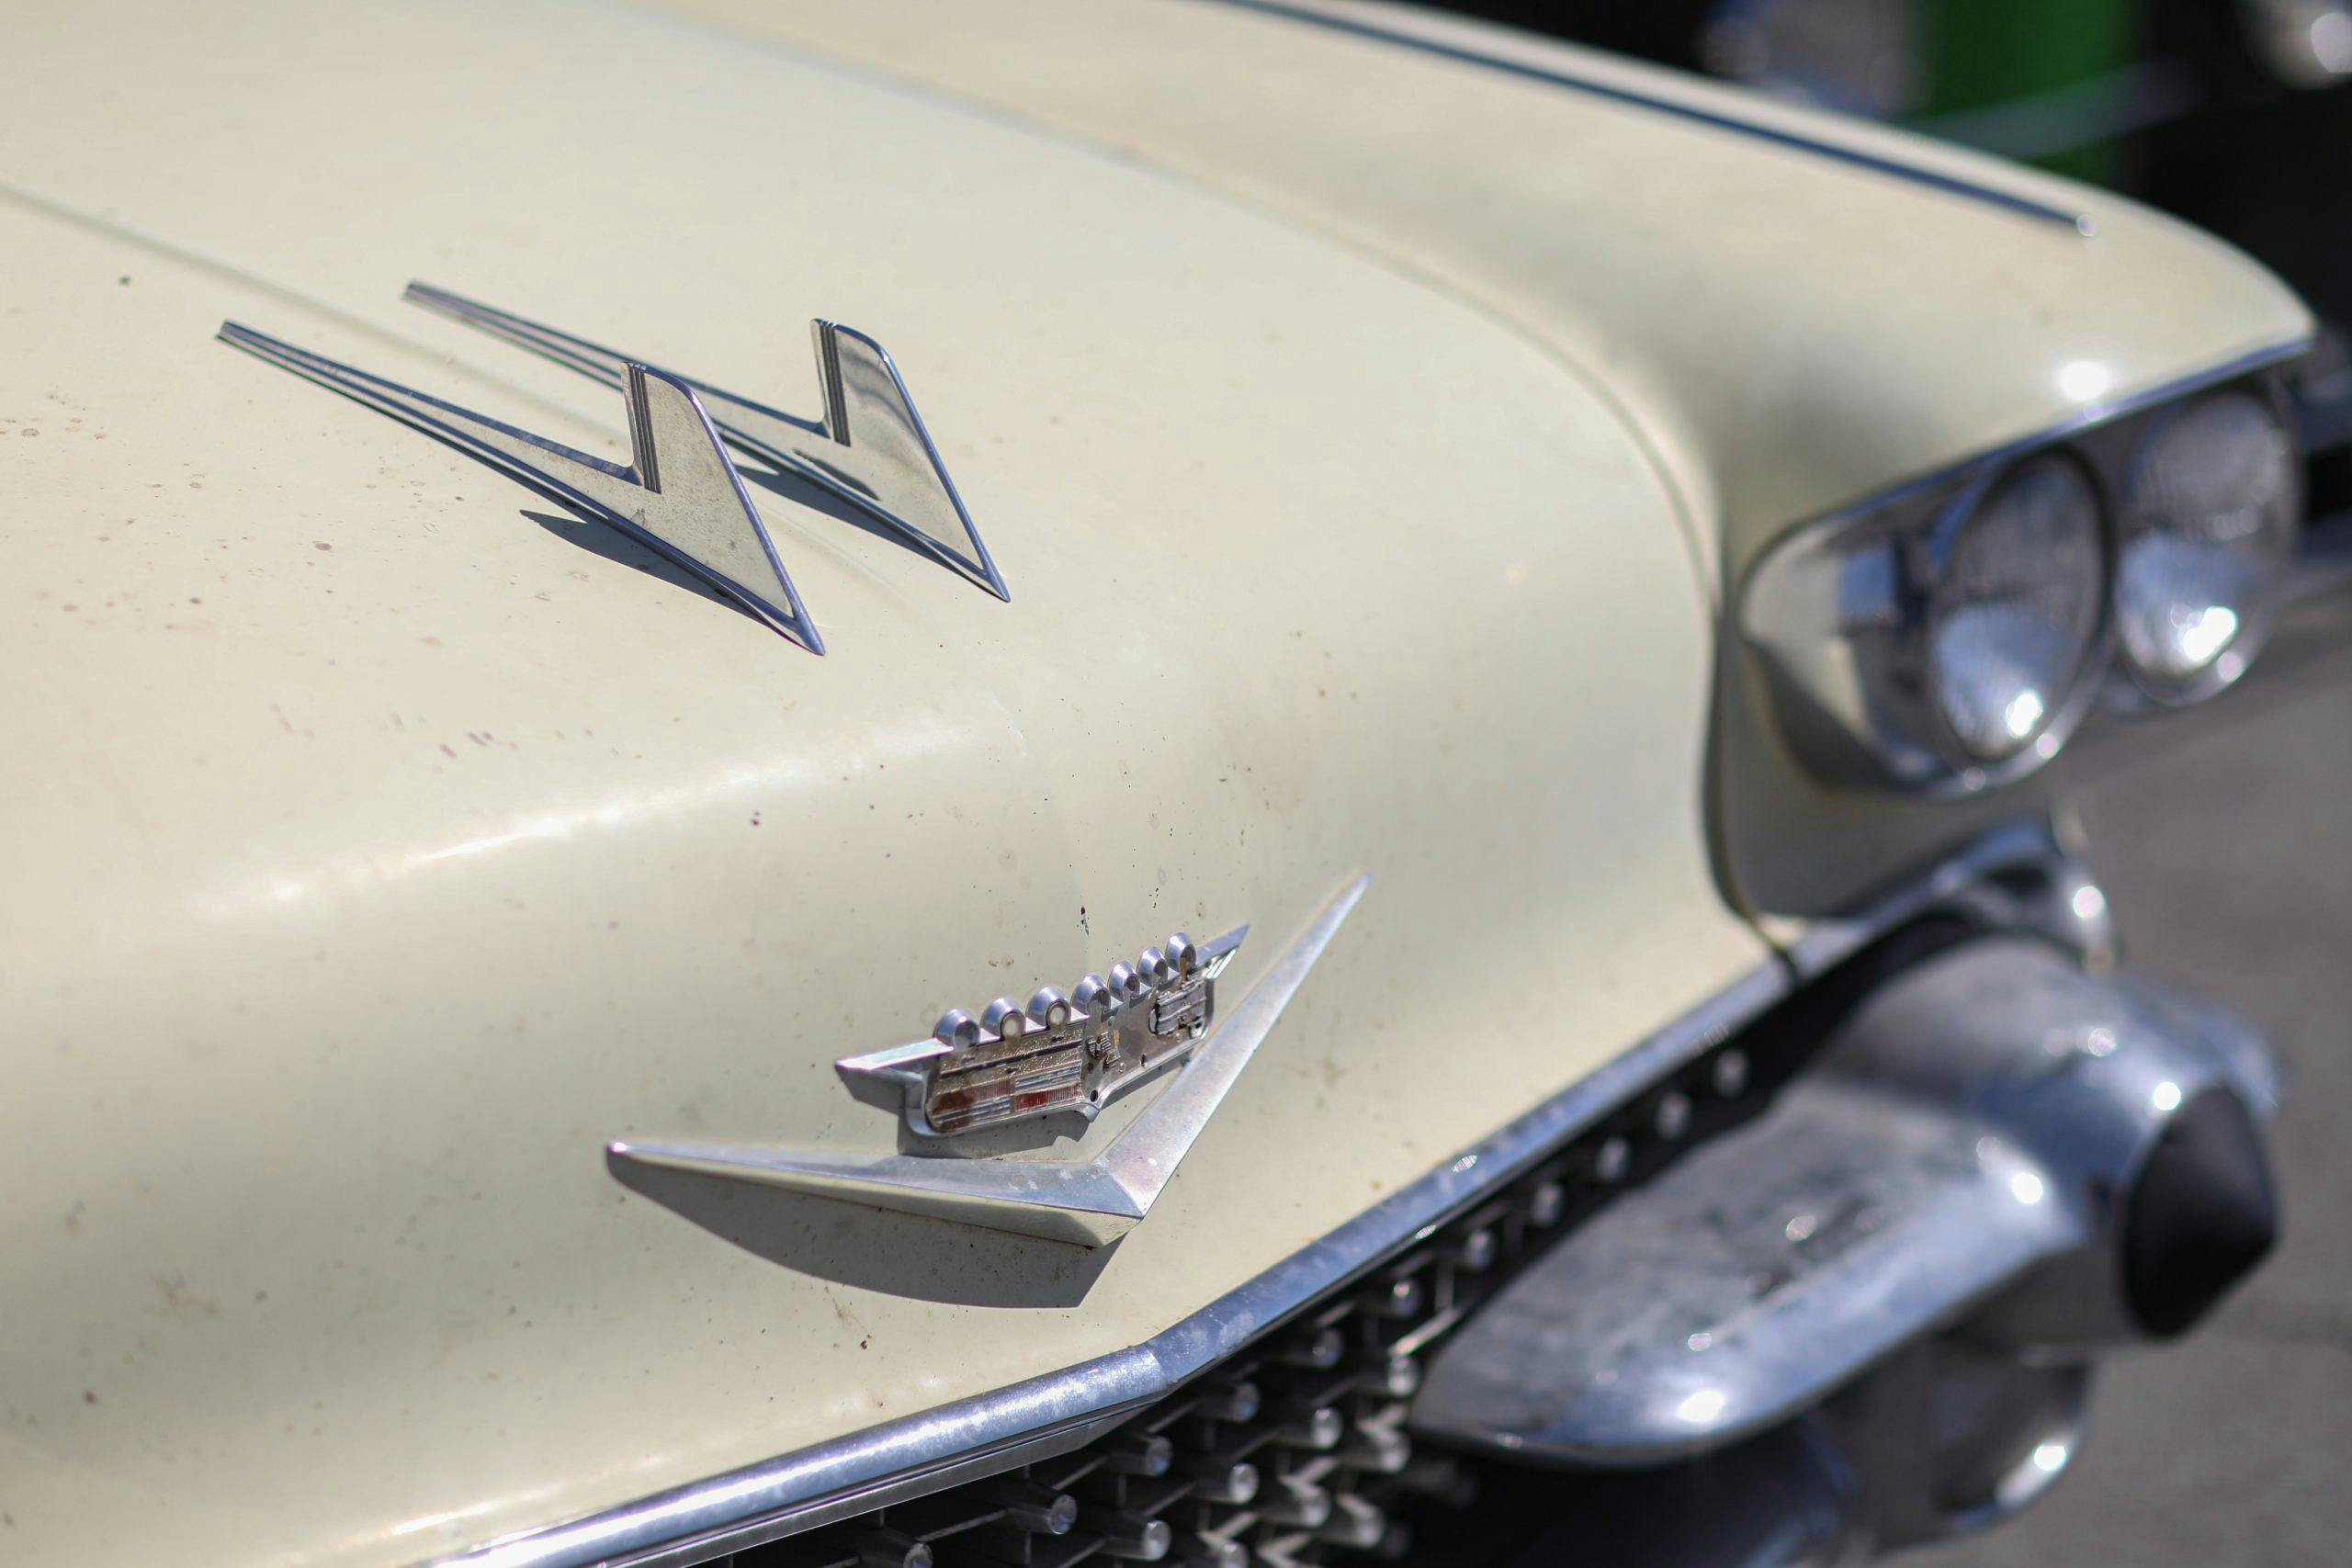 1958 Cadillac Hood ornament fins